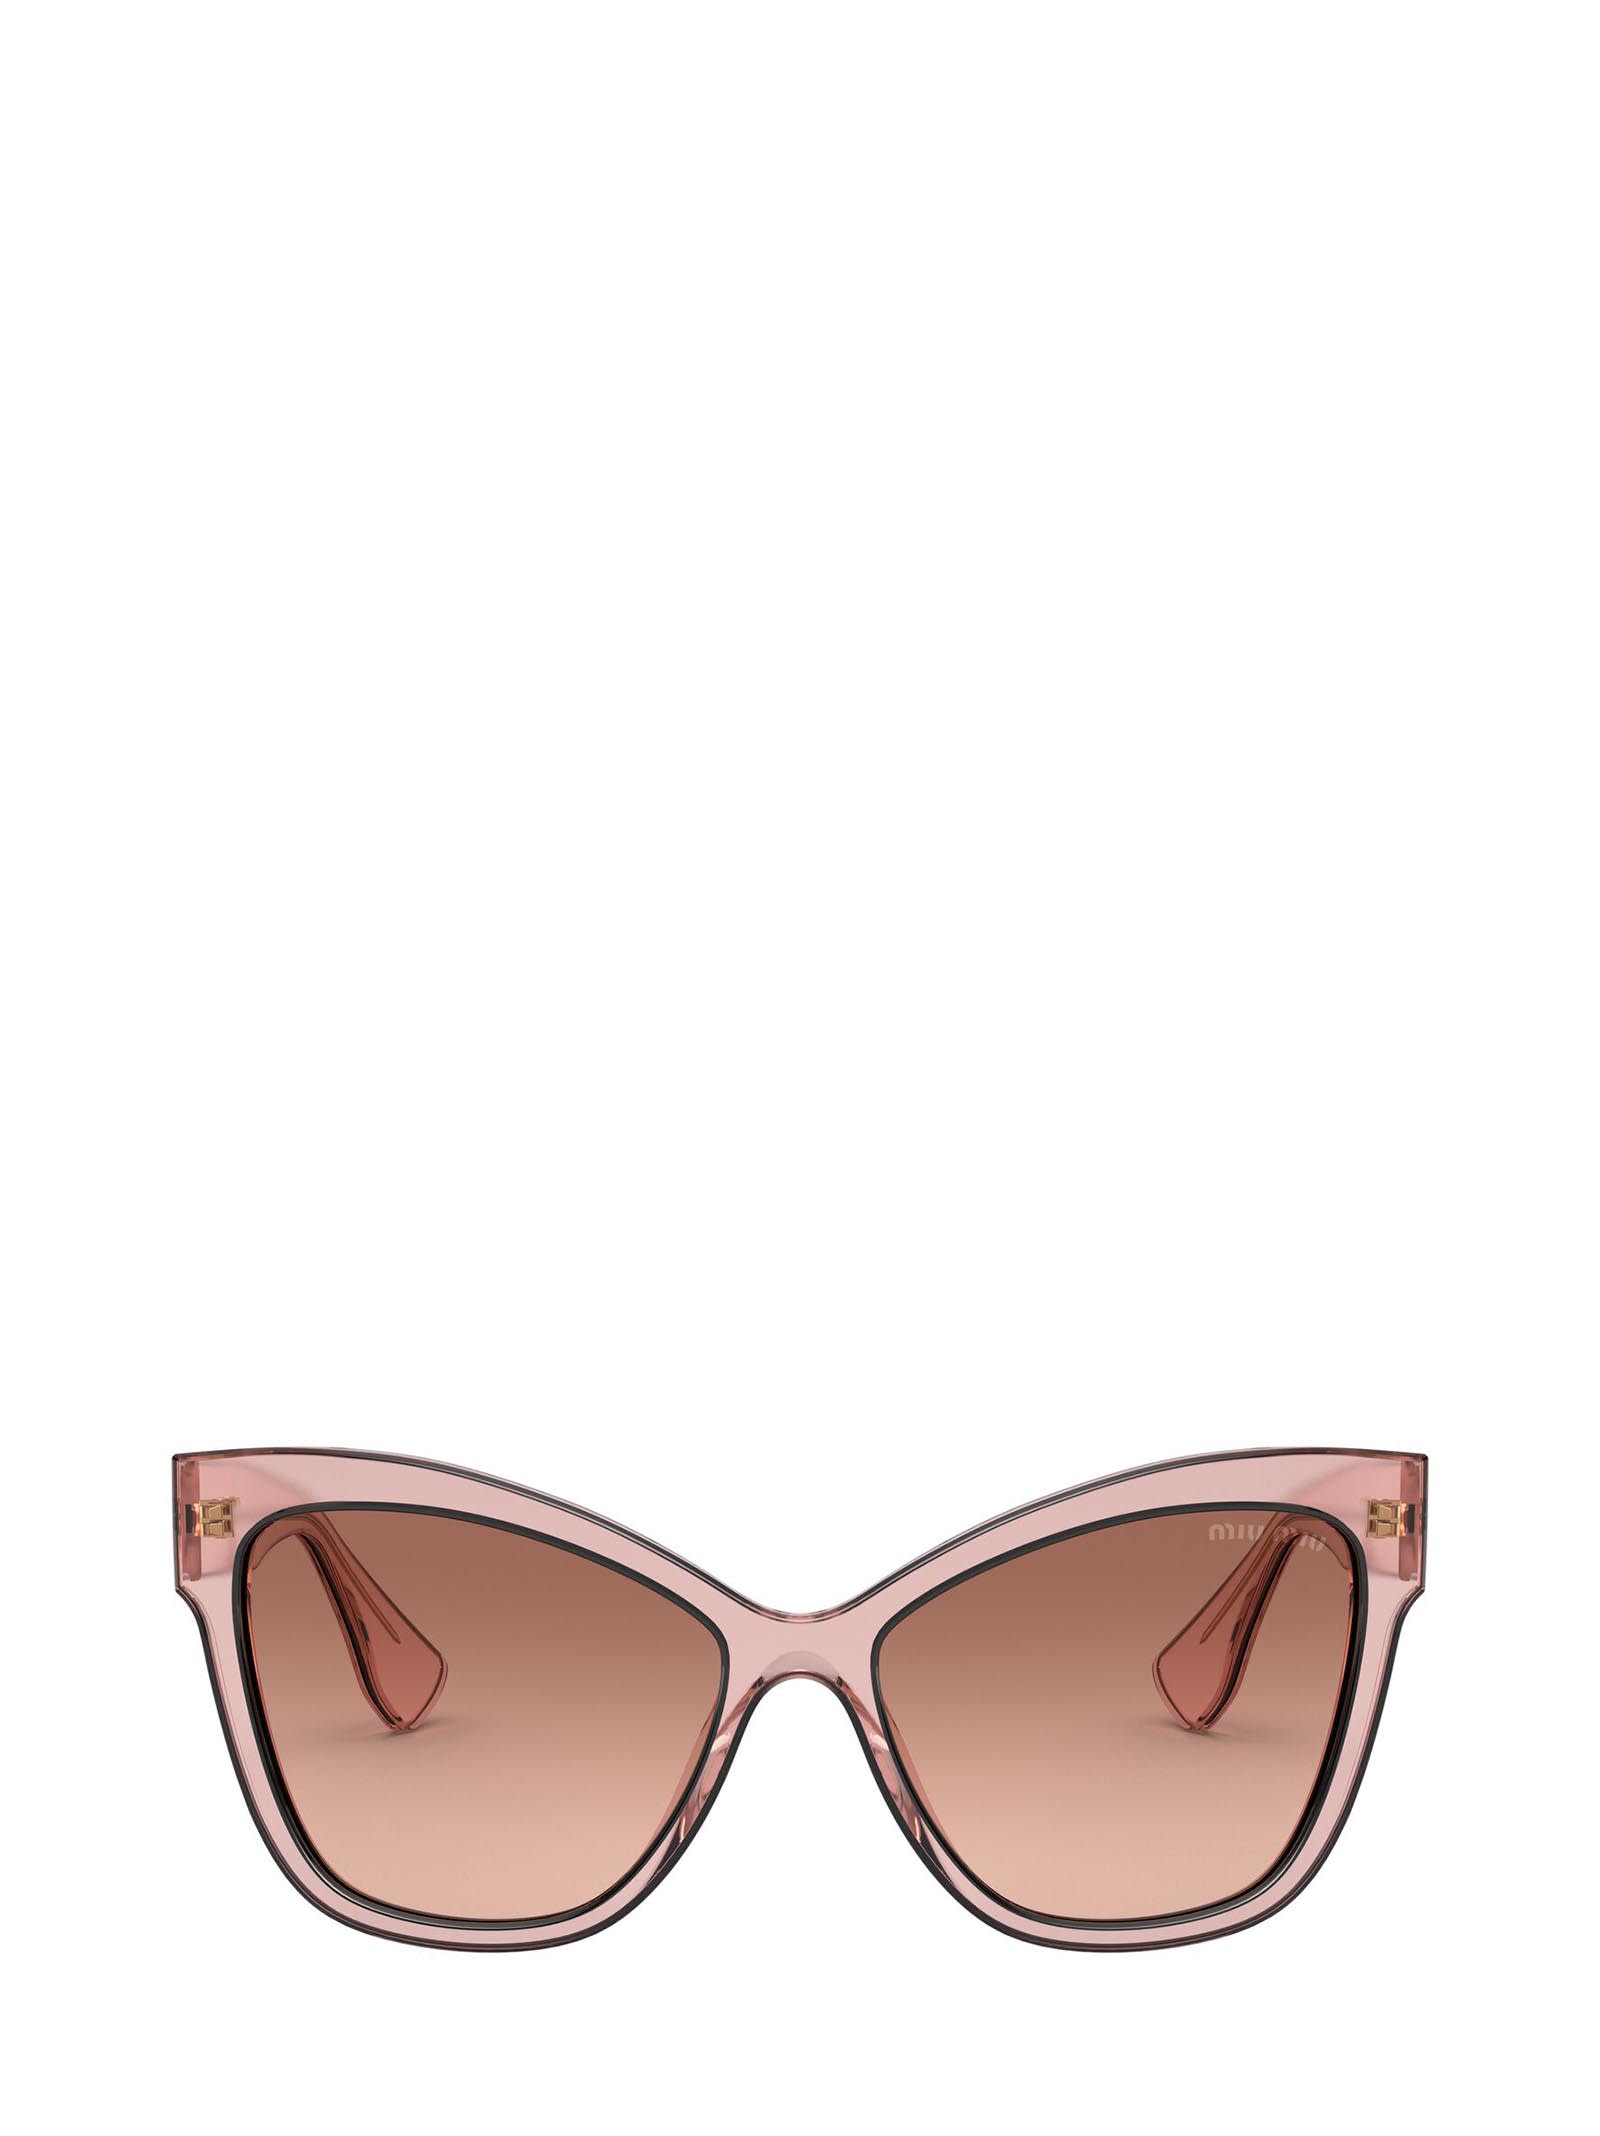 Miu Miu Miu Miu Mu 08vs Pink Transparent Sunglasses